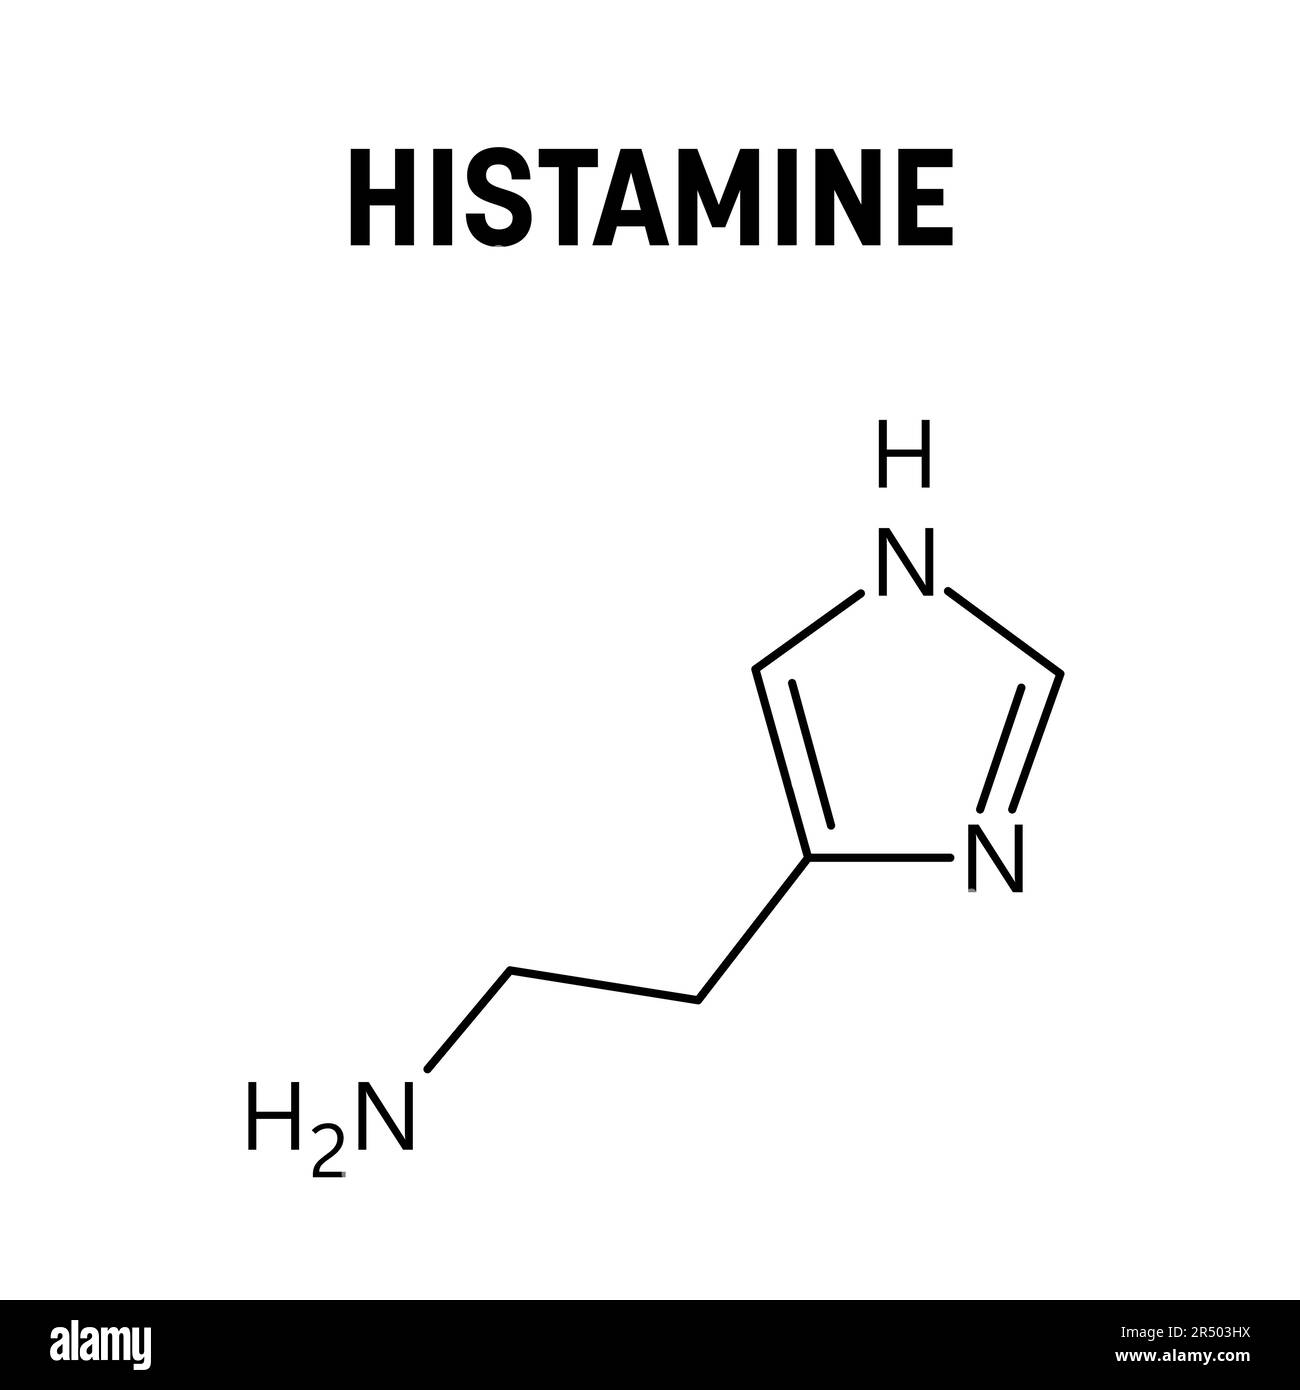 Structure moléculaire de l'histamine. L'histamine est un composé organique impliqué dans les réponses immunitaires locales, régulant les fonctions physiologiques et agissant comme neur Illustration de Vecteur